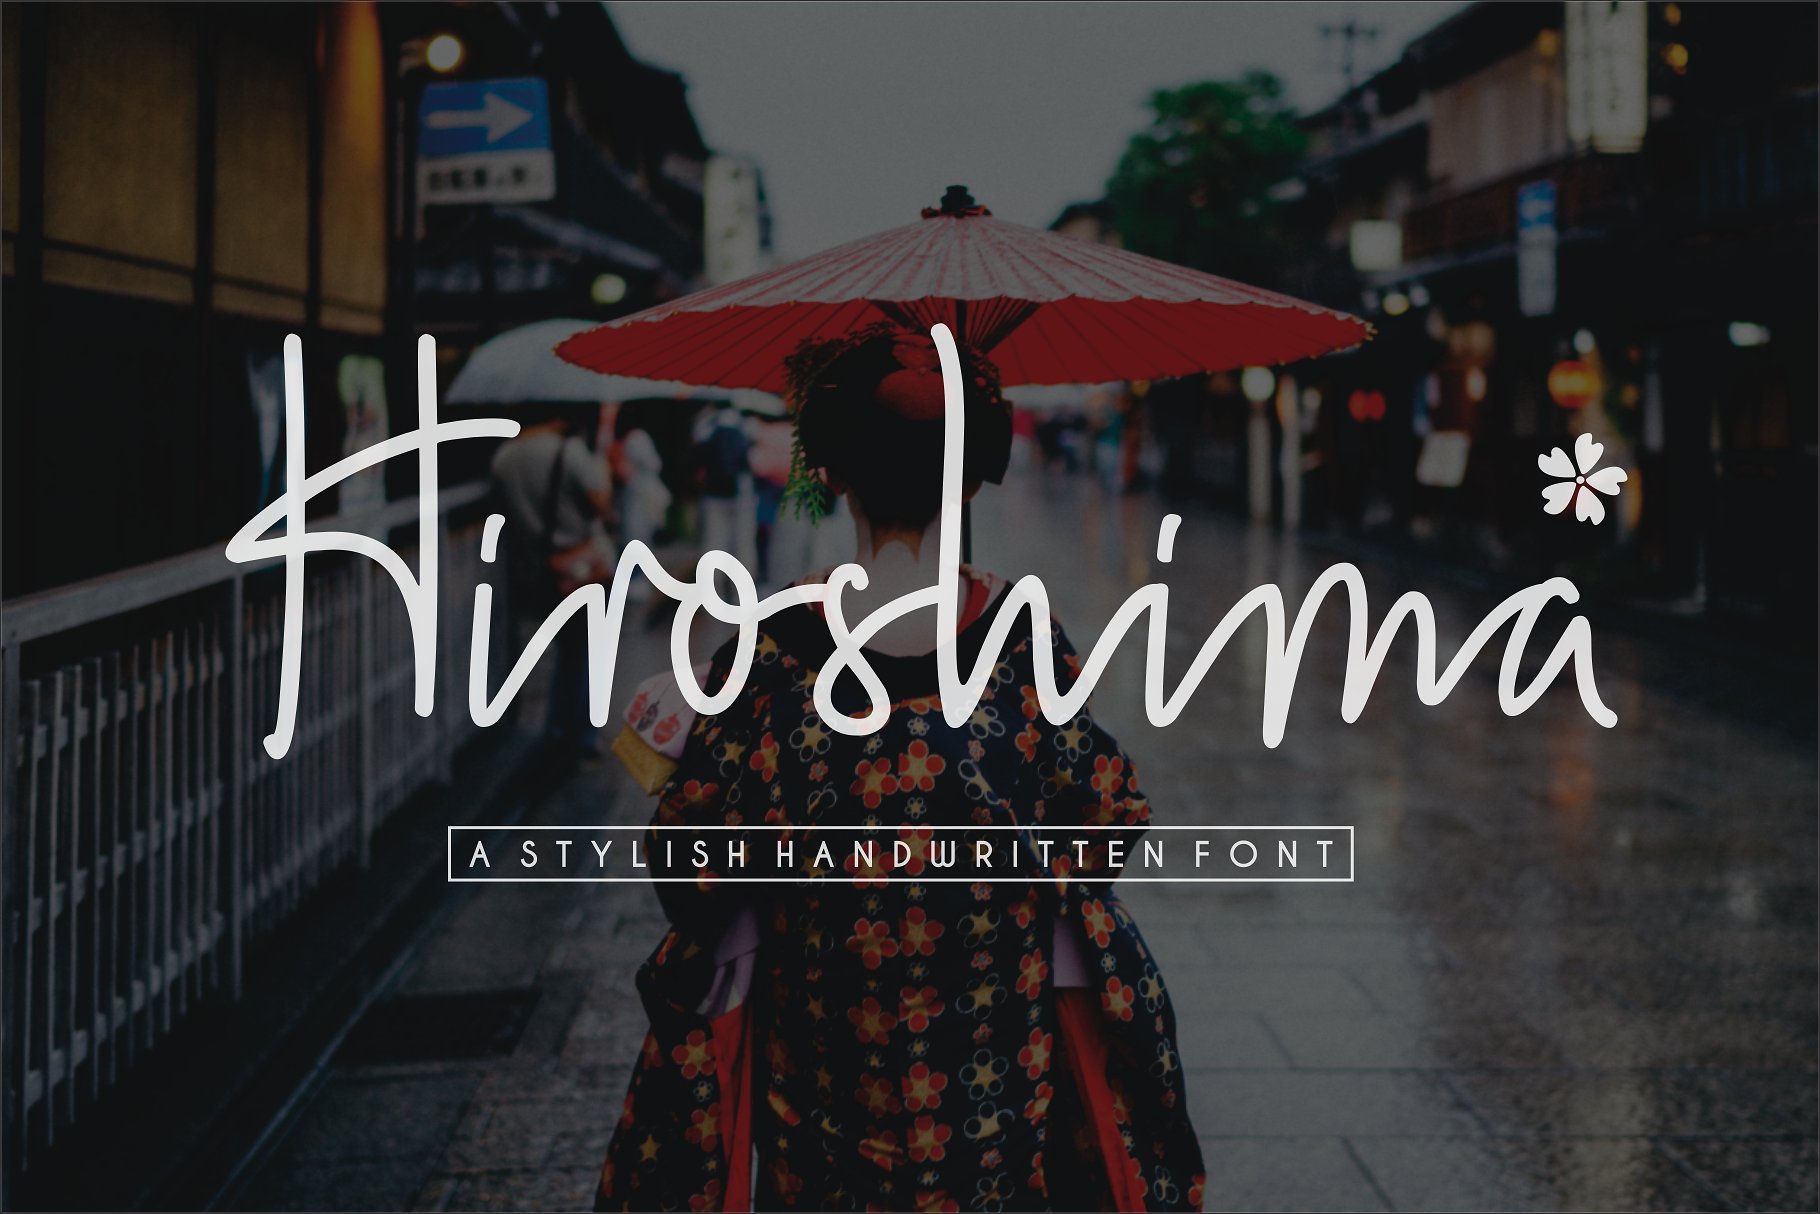 时尚优雅的手写粗笔画和线条字体 Hiroshima – A Stylish Handwritten Font插图